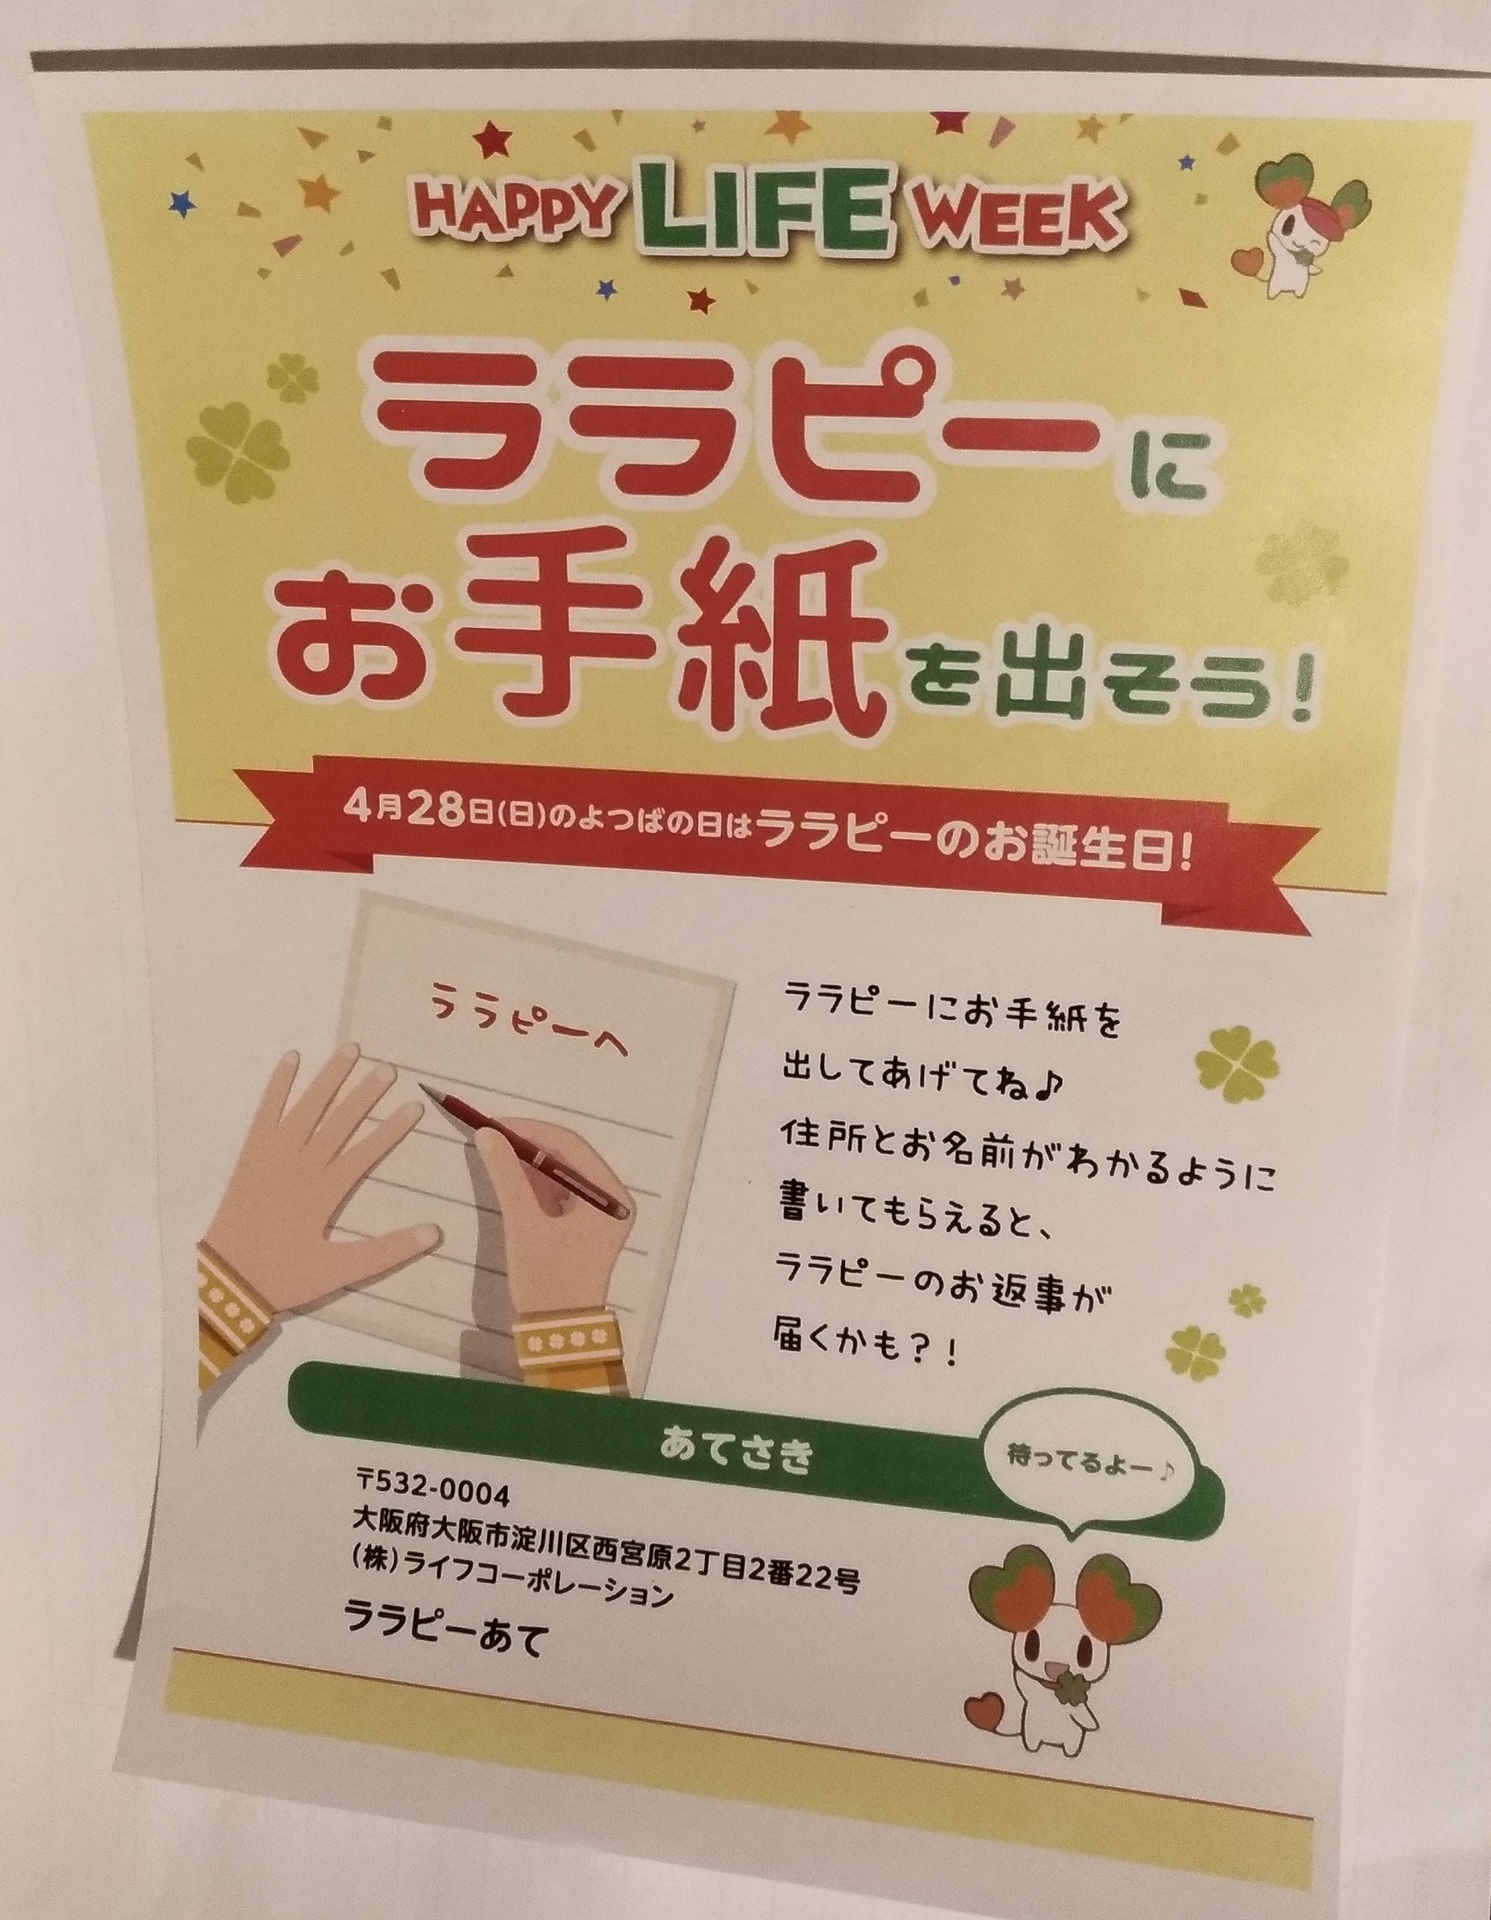 ライフ イベントララピーにお手紙を出そうお誕生日に スーパーライフ 大阪おすすめお惣菜野菜をブログでポイントも